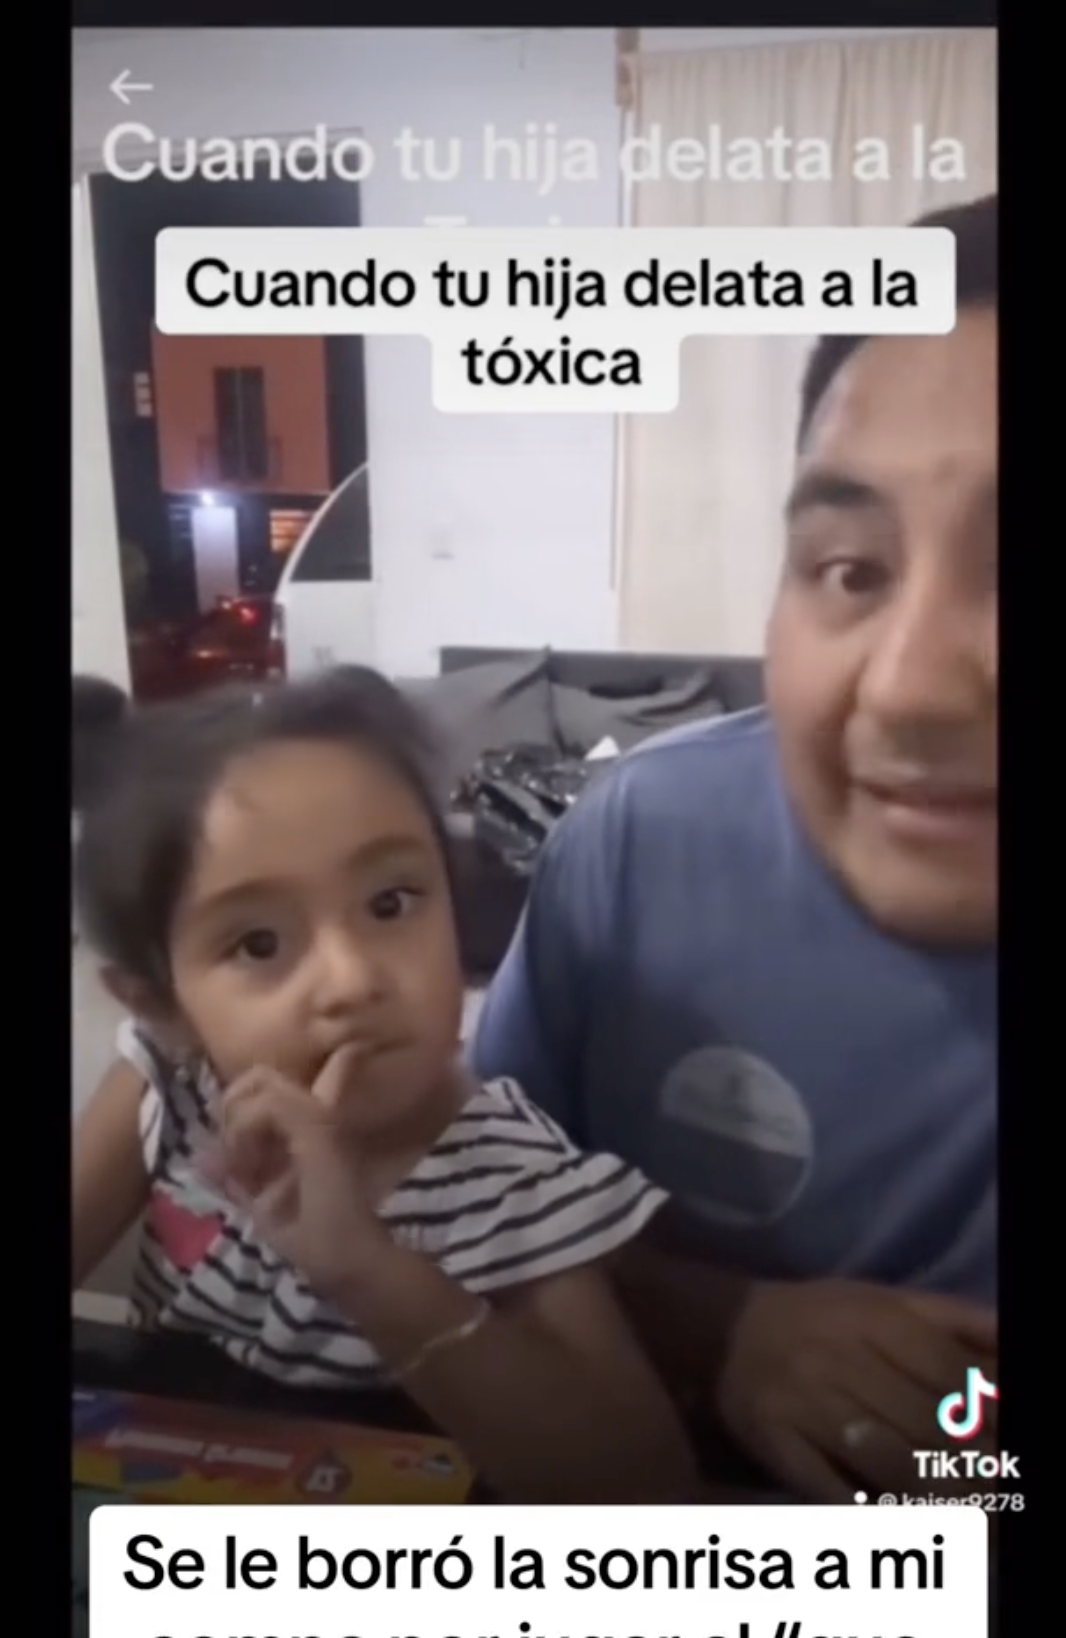 Das Vater-Tochter-Duo aus Mexiko wird bei einem lustigen Spiel abgebildet, während es an einer beliebten Social-Media-Herausforderung teilnimmt. | Quelle: tiktok.com/@kaiser927